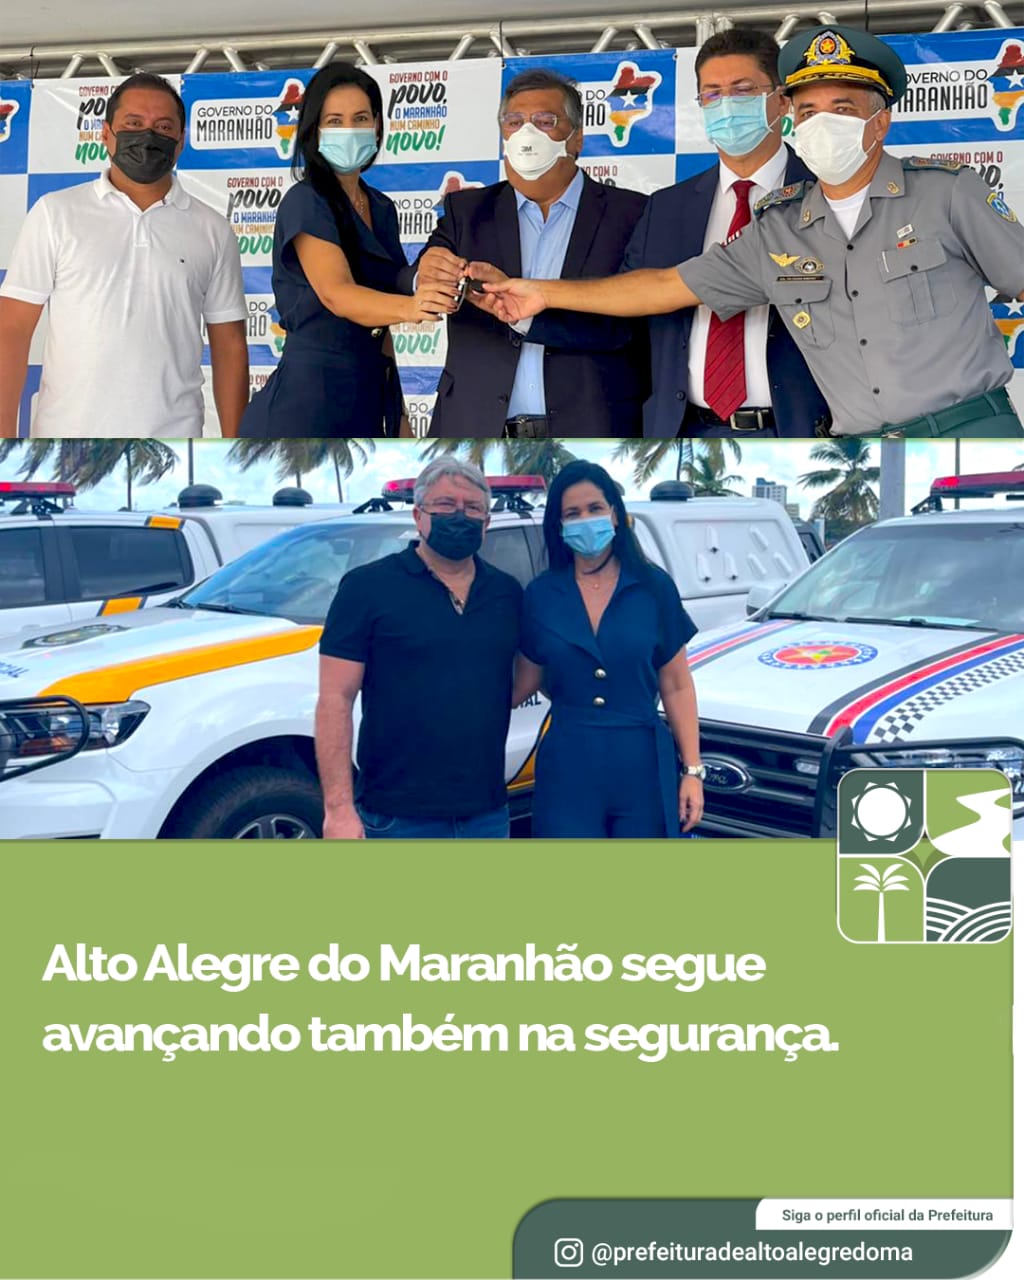 [SEGURANÇA] Investimentos e parcerias para levar mais segurança em Alto Alegre do Maranhão.